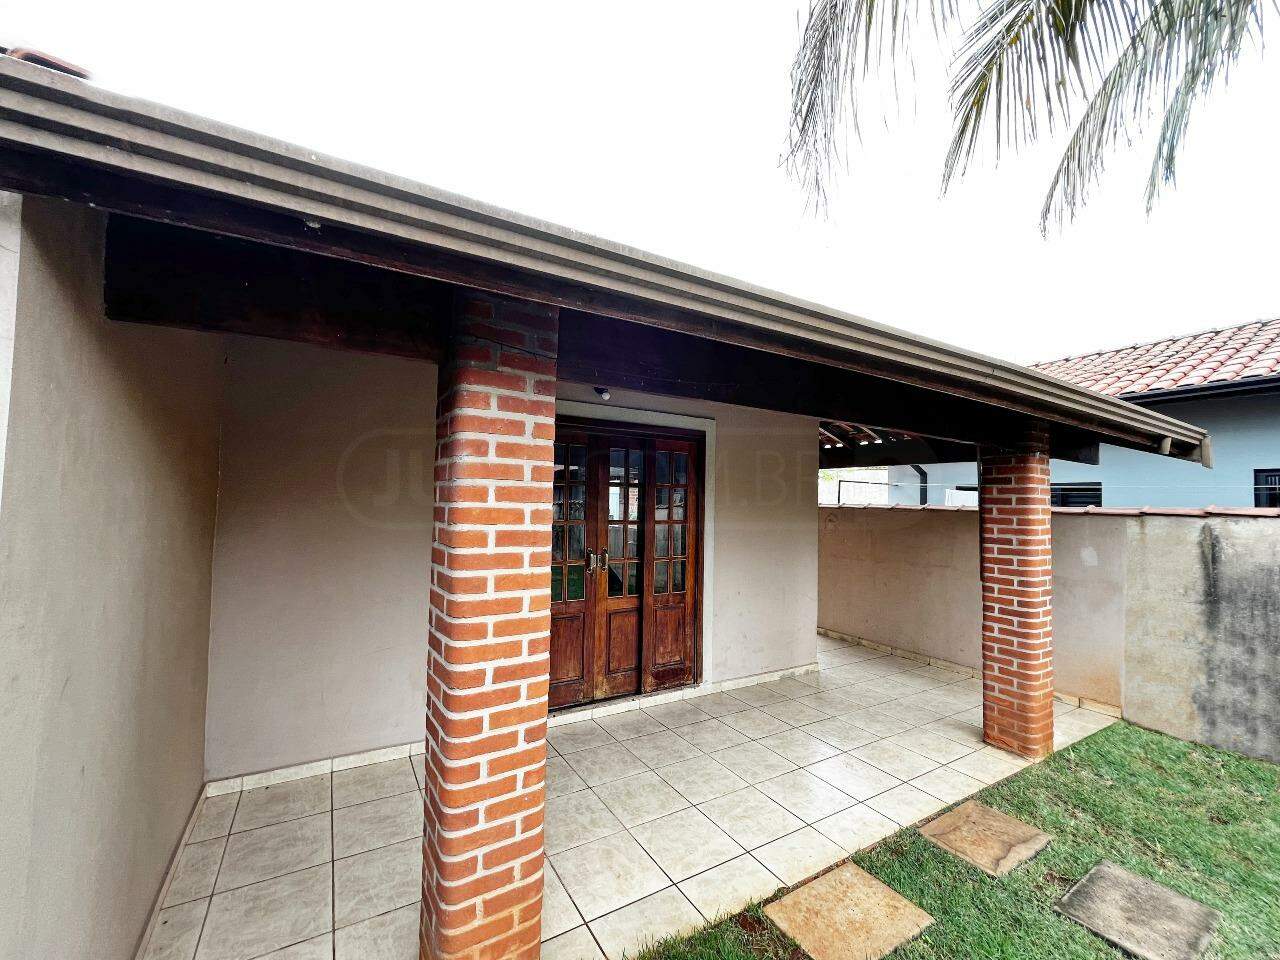 Casa à venda, 1 quarto, sendo 1 suíte, 3 vagas, no bairro Santa Terezinha em Piracicaba - SP